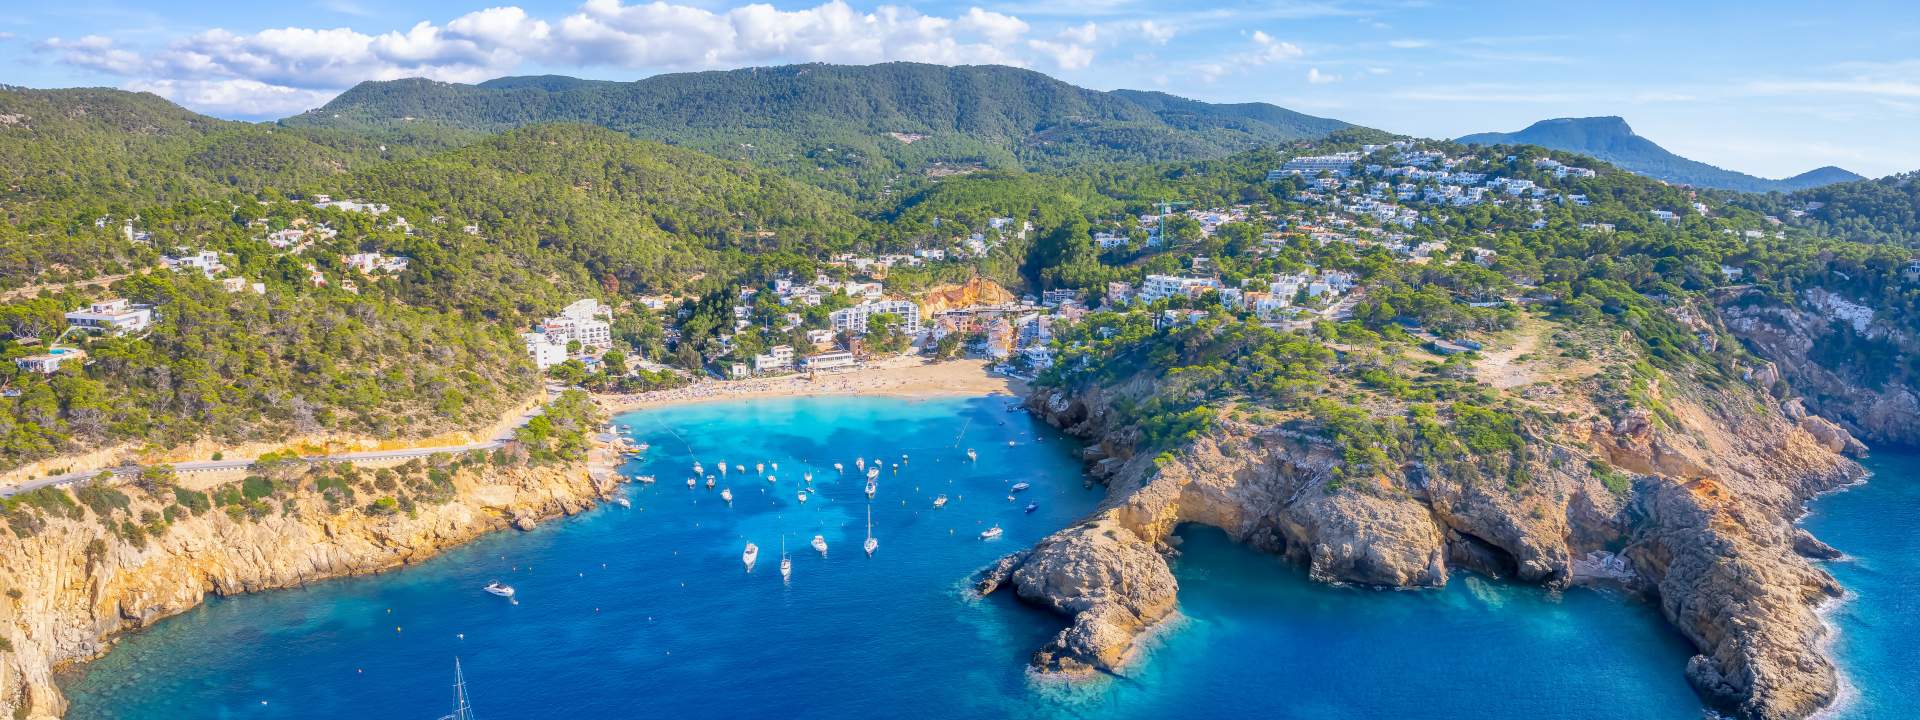 Ibiza, un'isola festosa con baie misteriose e mozzafiato